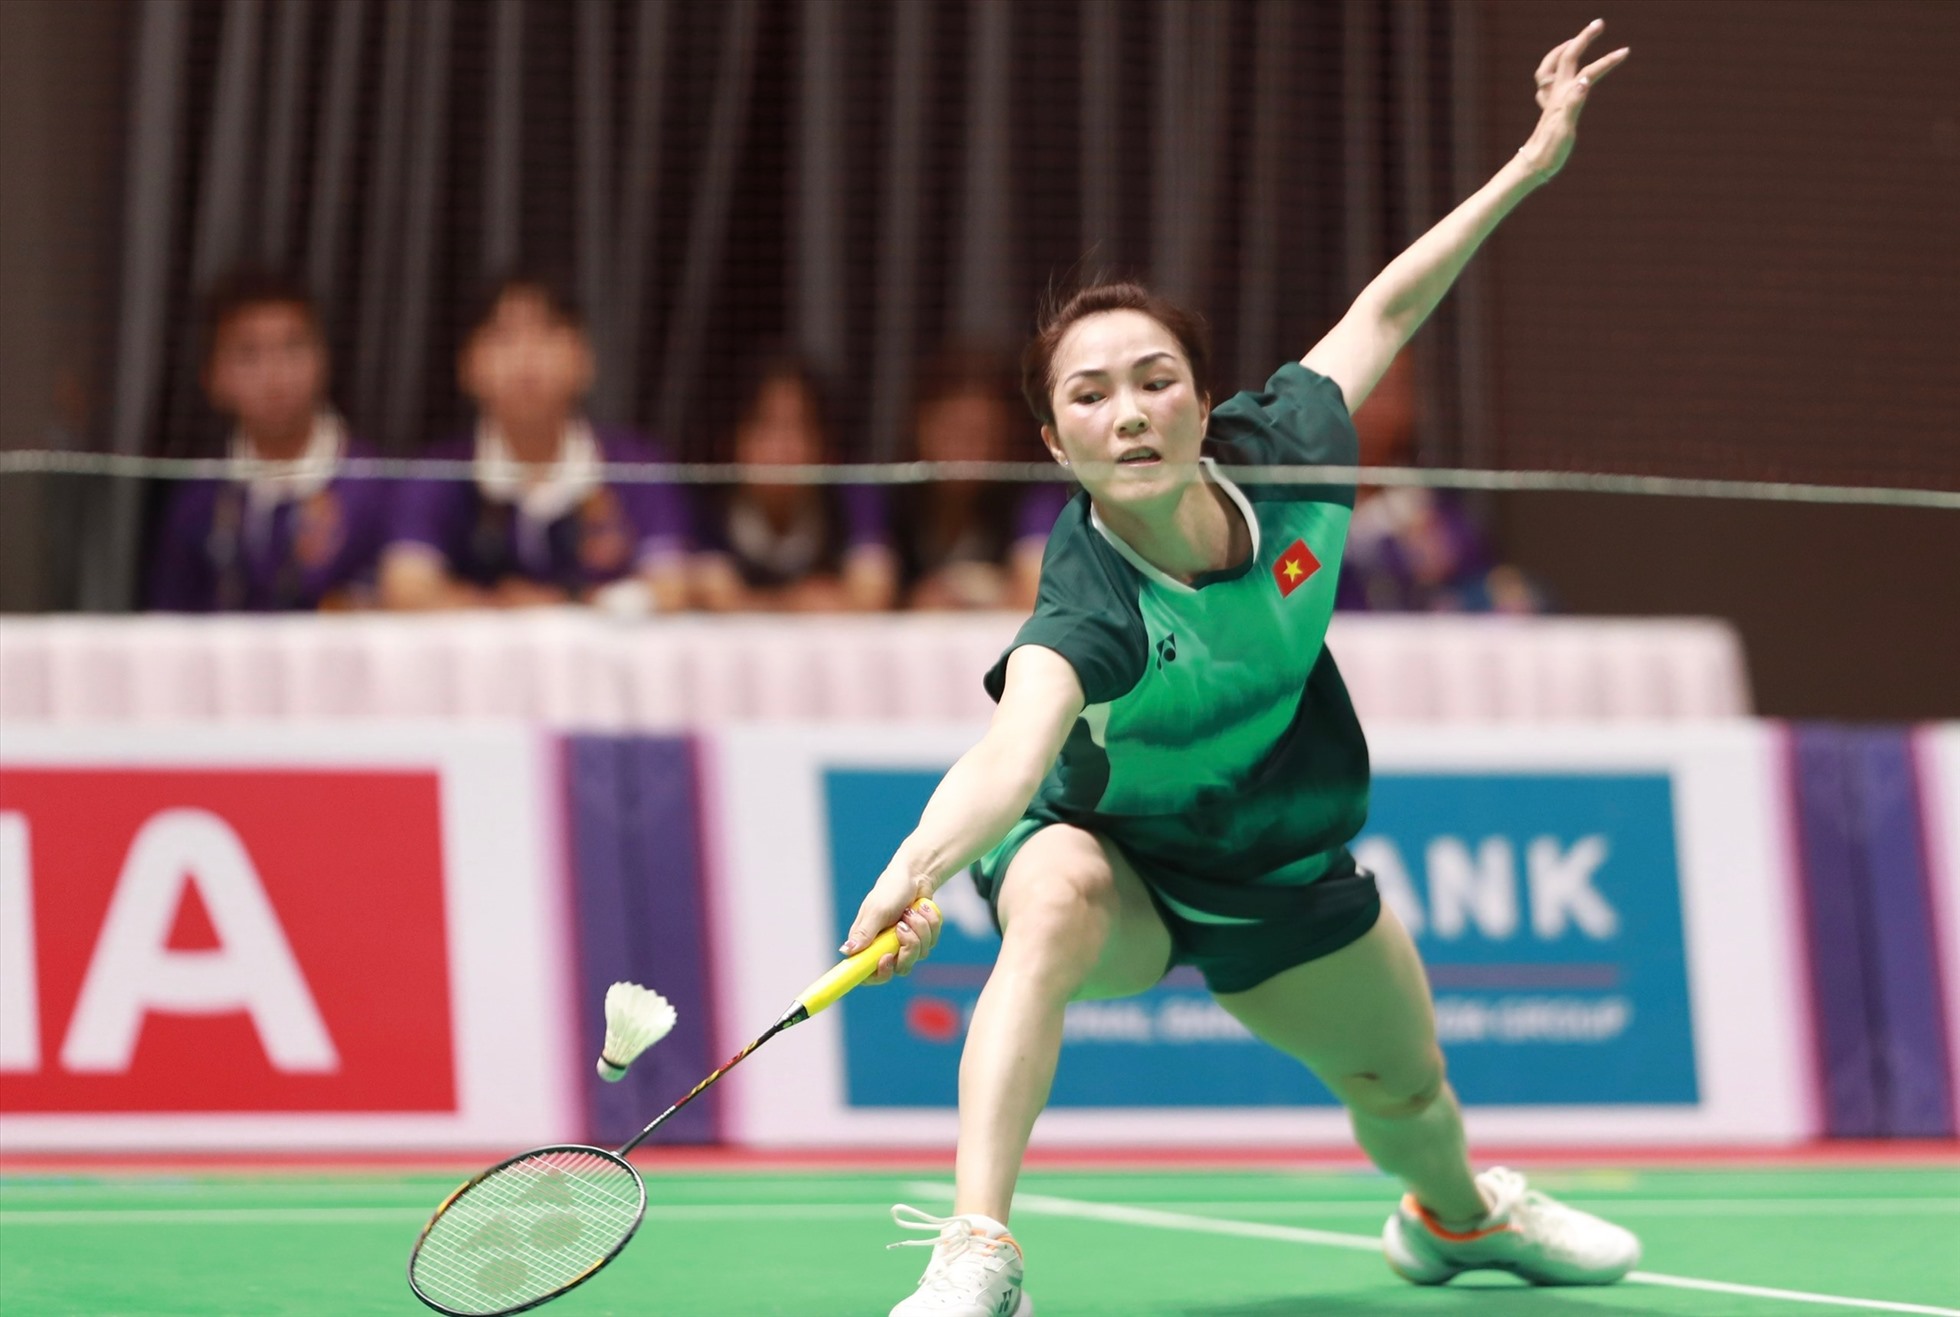 Tay vợt Vũ Thị Trang thua ngược ở ván thứ 3 trận đơn 2 nội dung cầu lông đồng đội nữ. Ảnh: Thanh Vũ